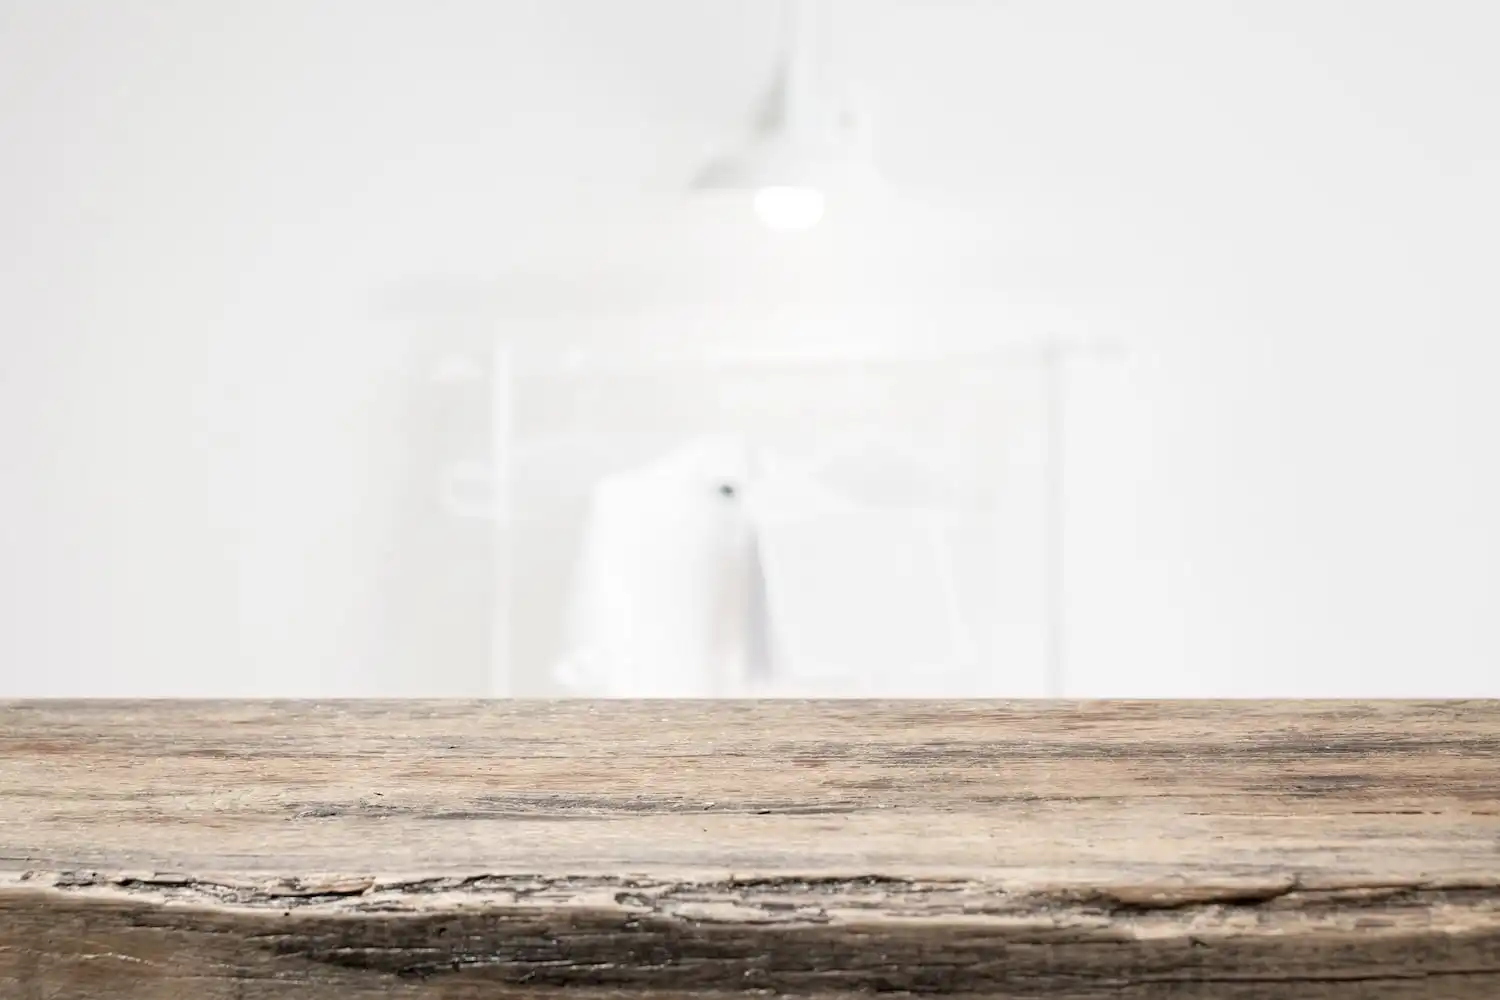 Vue de profil d'une table en bois rustique robuste sur un fond flou et épuré, mettant l'accent sur la texture grossière et les détails du bois ancien, évoquant la durabilité et l'artisanat de qualité.